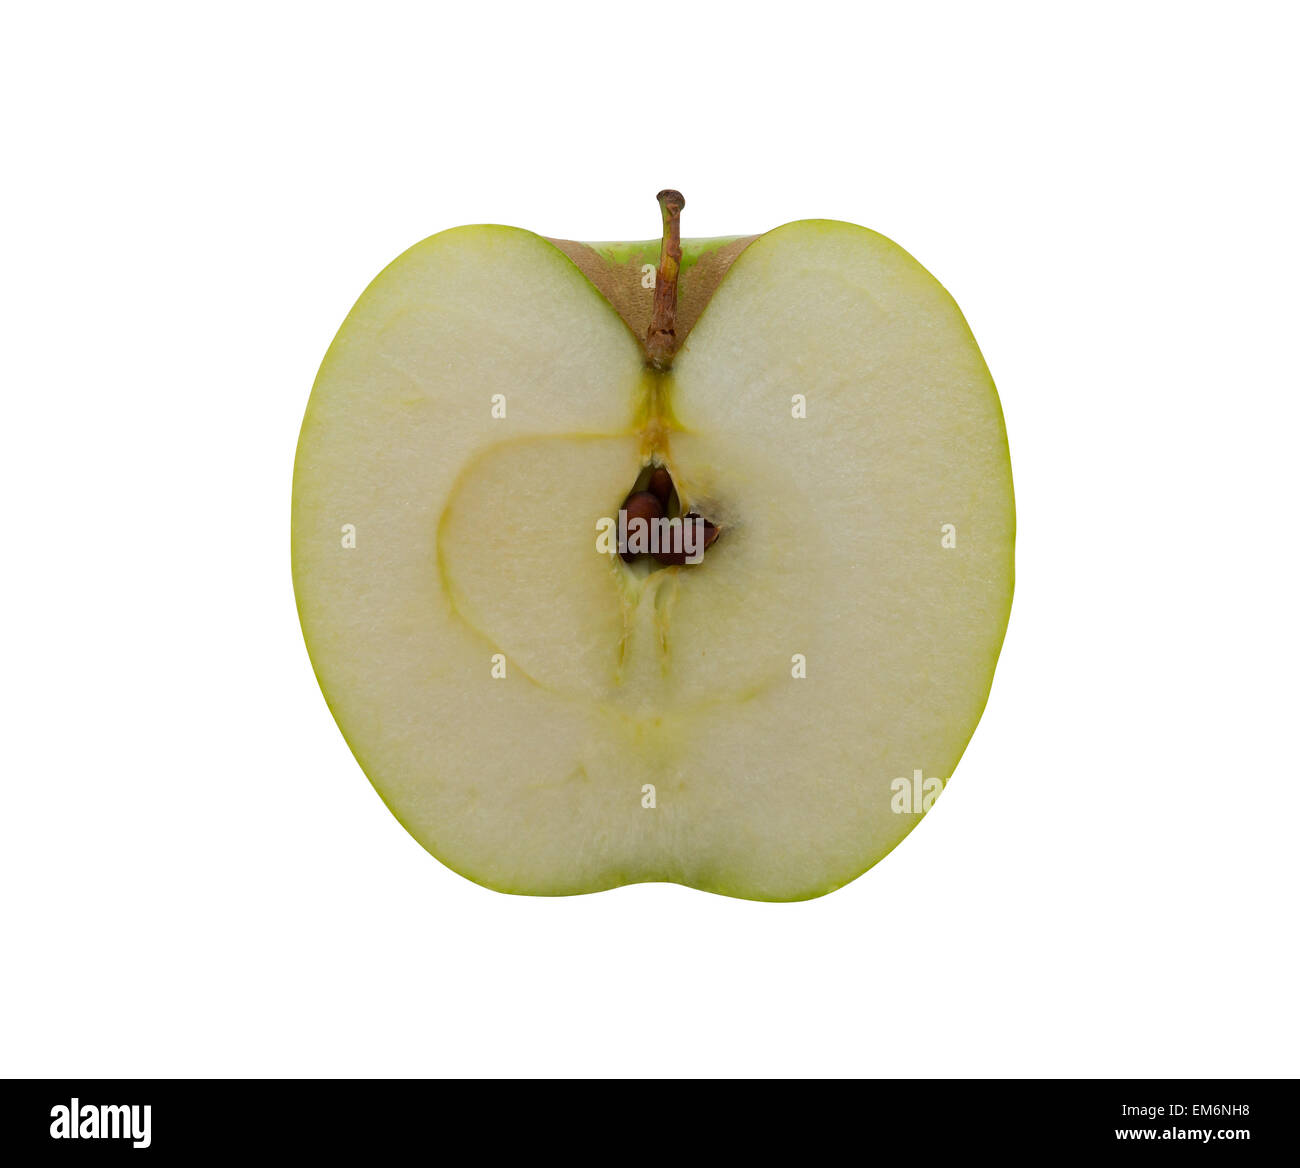 Frische saftige leckere grüner Apfel. Essen Sie den Apfel und erhöhen Sie Vitalität zu. Stockfoto